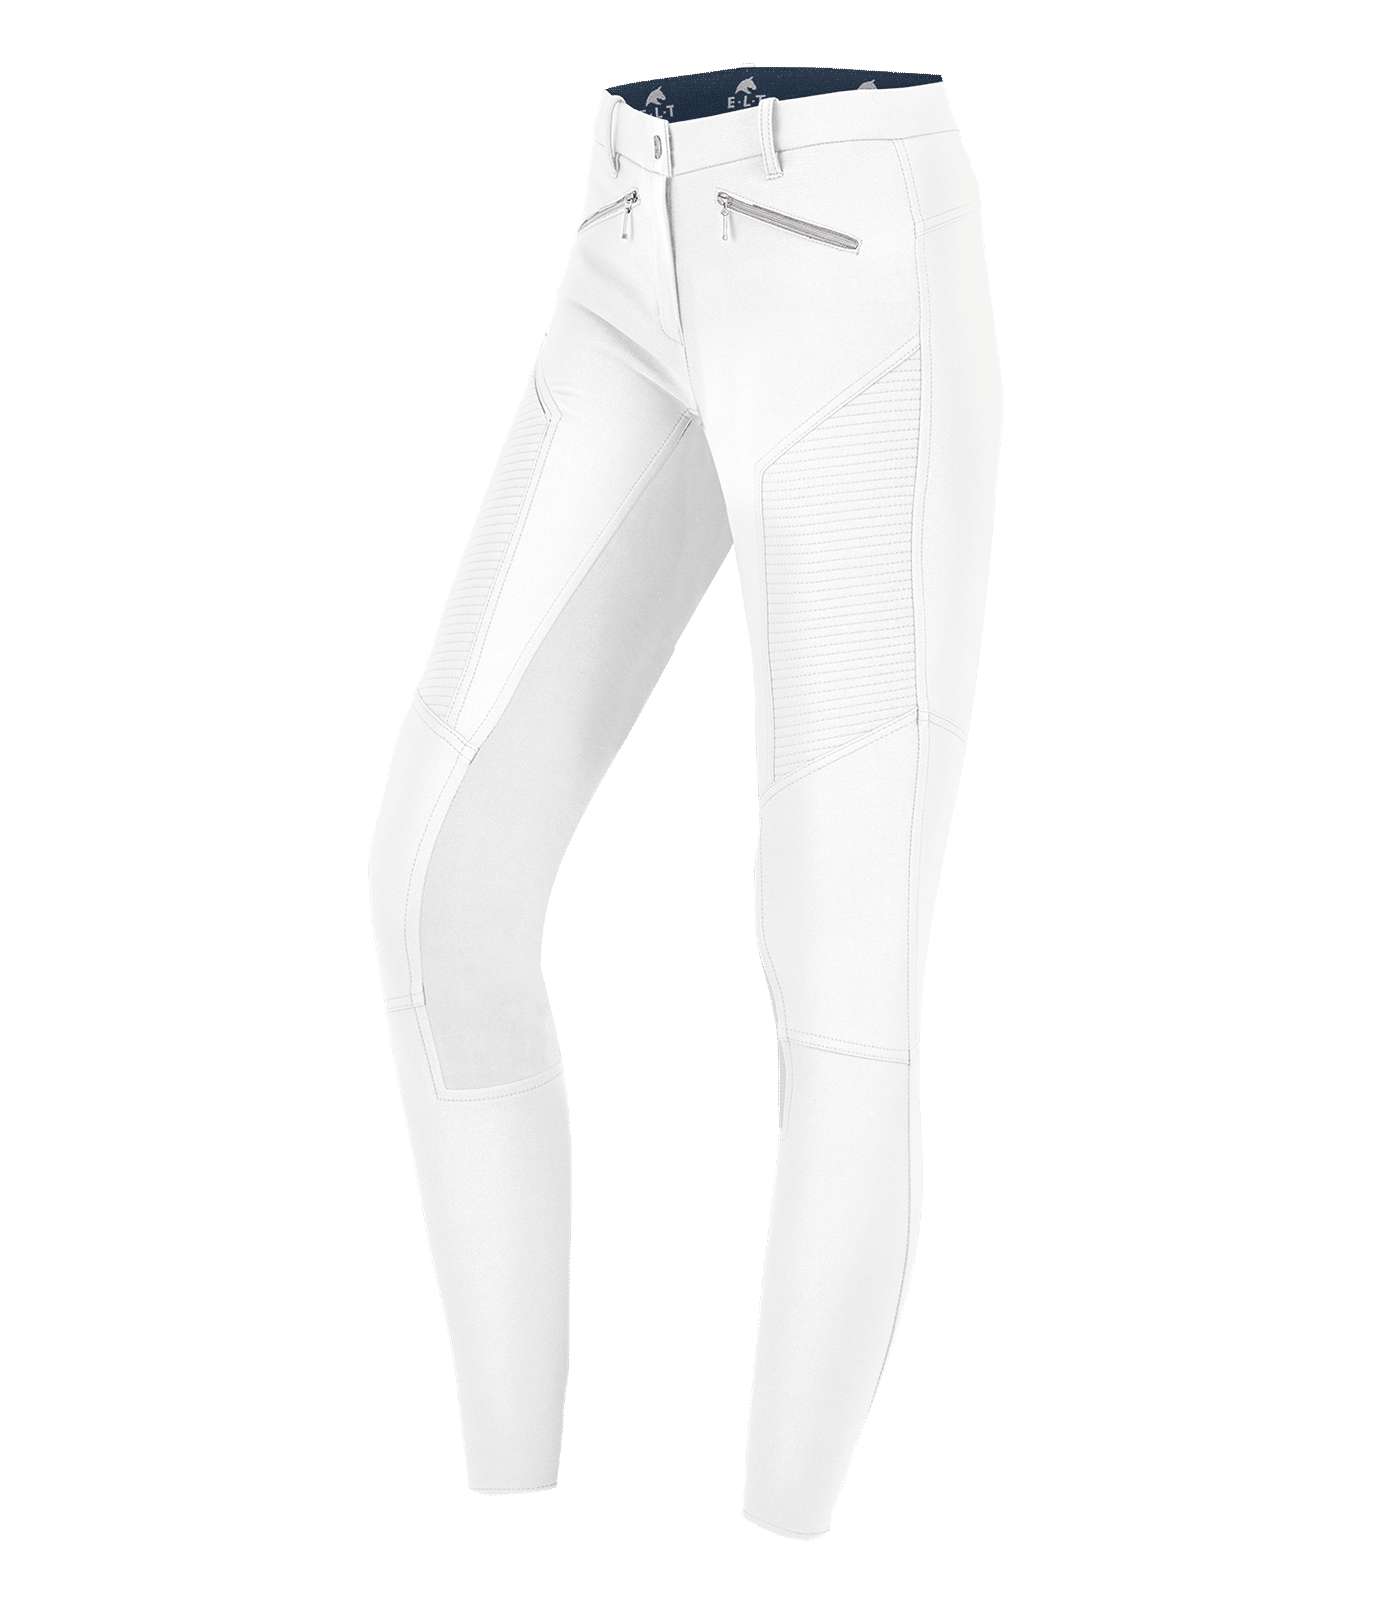 Pantalones de equitación Gala blanco